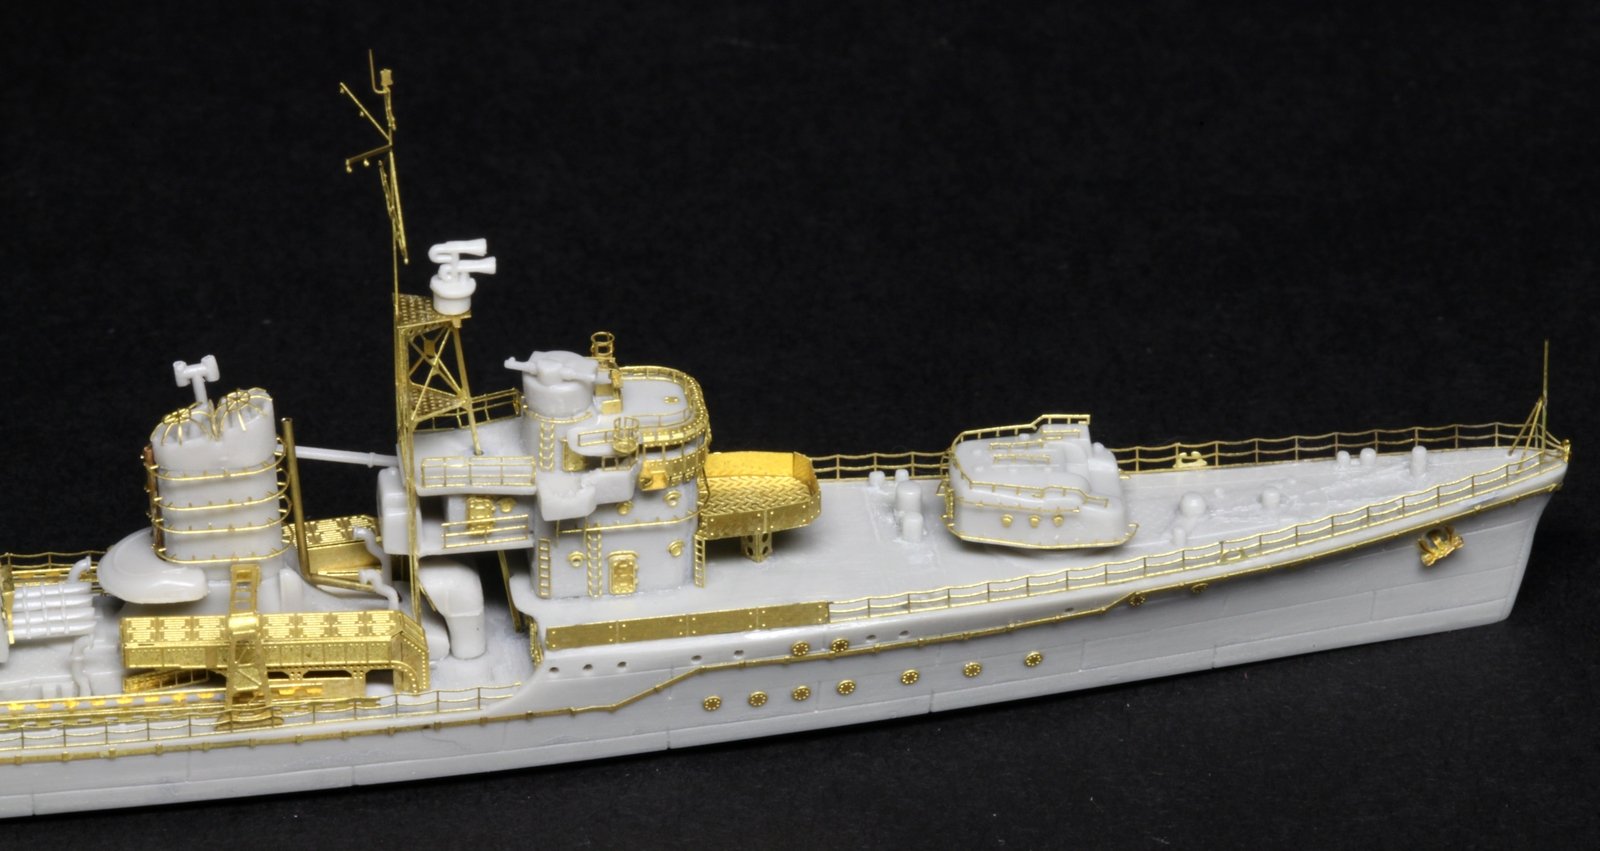 1/700 二战日本海军雪风号驱逐舰升级改造套件(配富士美40096/40100)